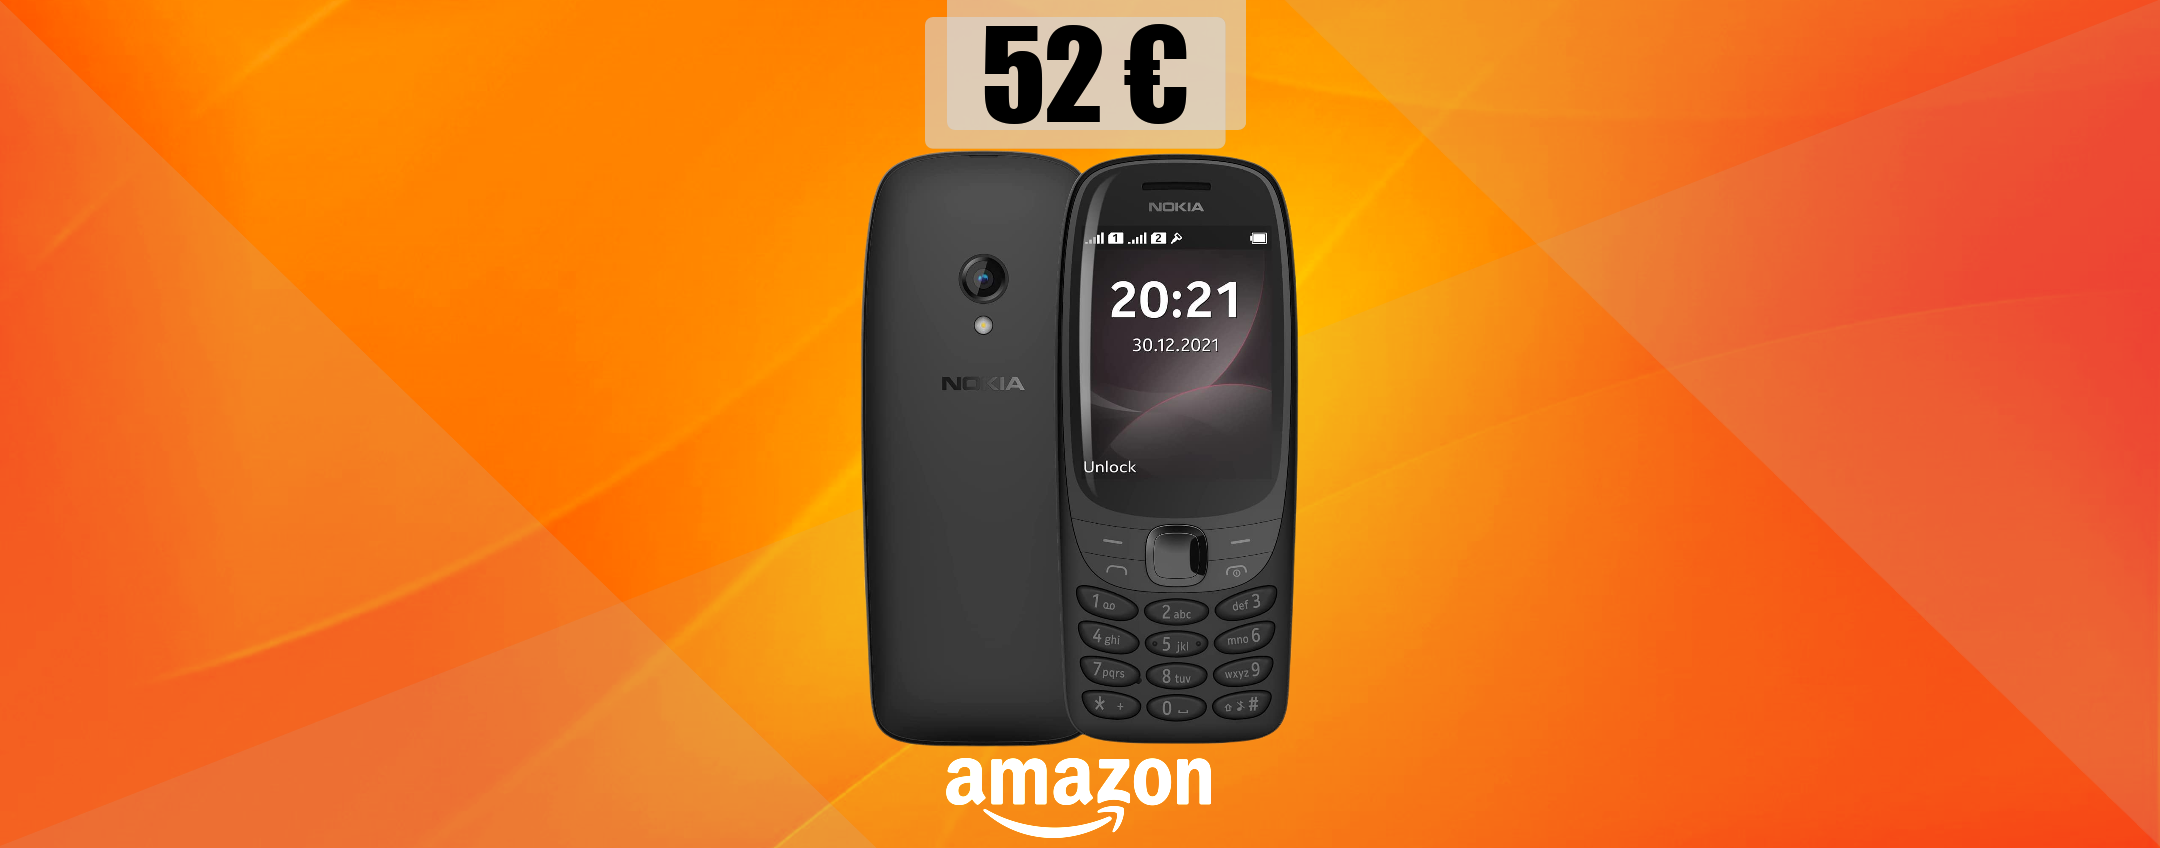 Nokia 6310: il cellulare IMMORTALE torna in sconto su Amazon (52€)